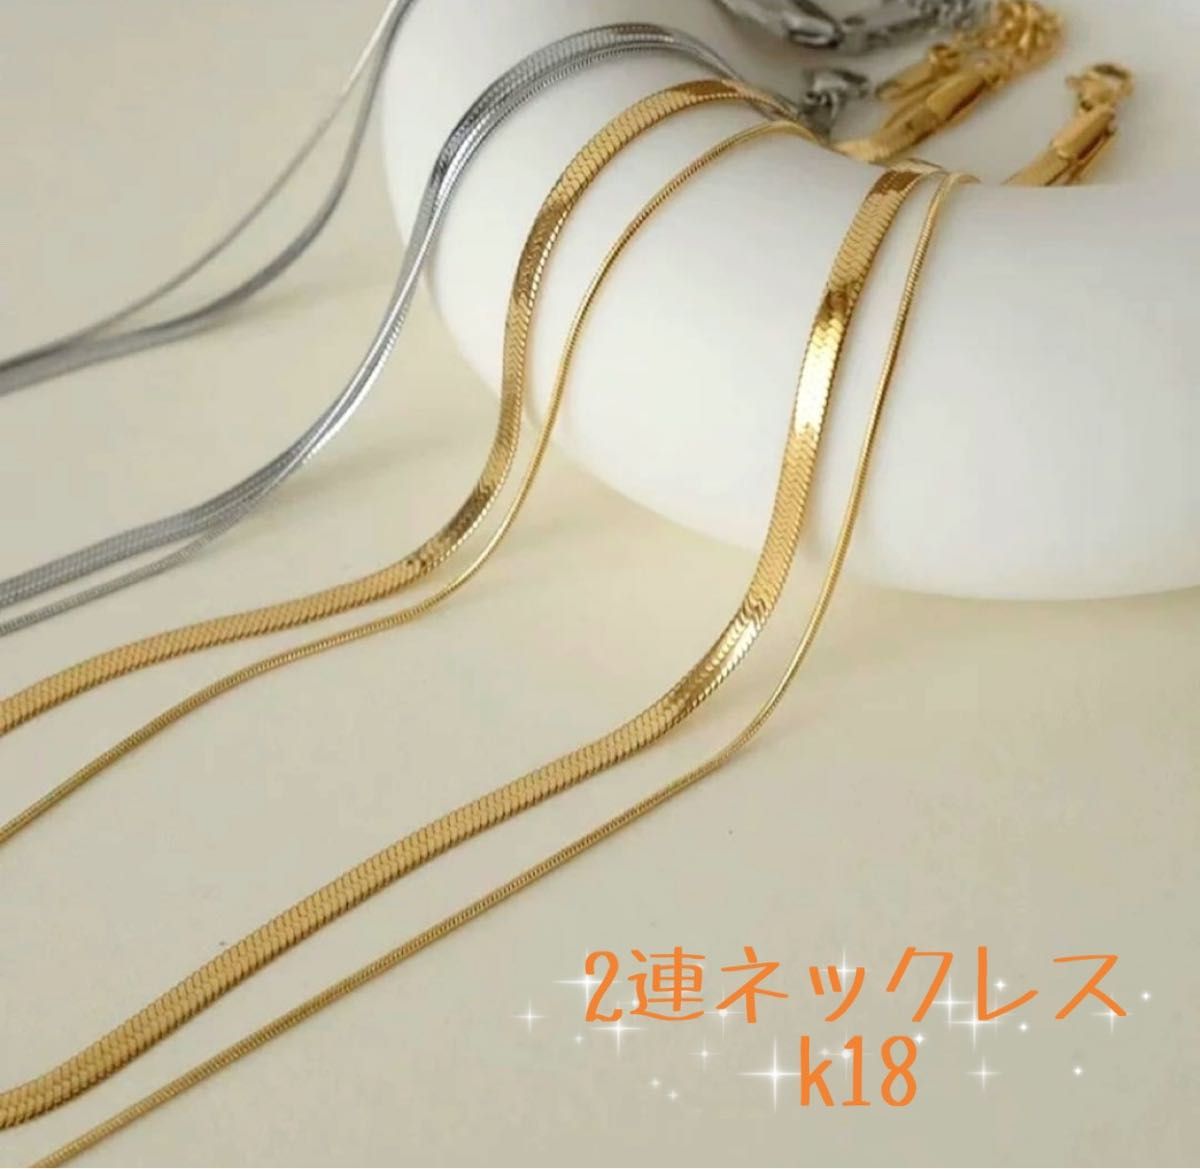 ネックレス 2連 ゴールド 上品 k18 スネークチェーン オシャレ キラキラ シンプル プレゼント